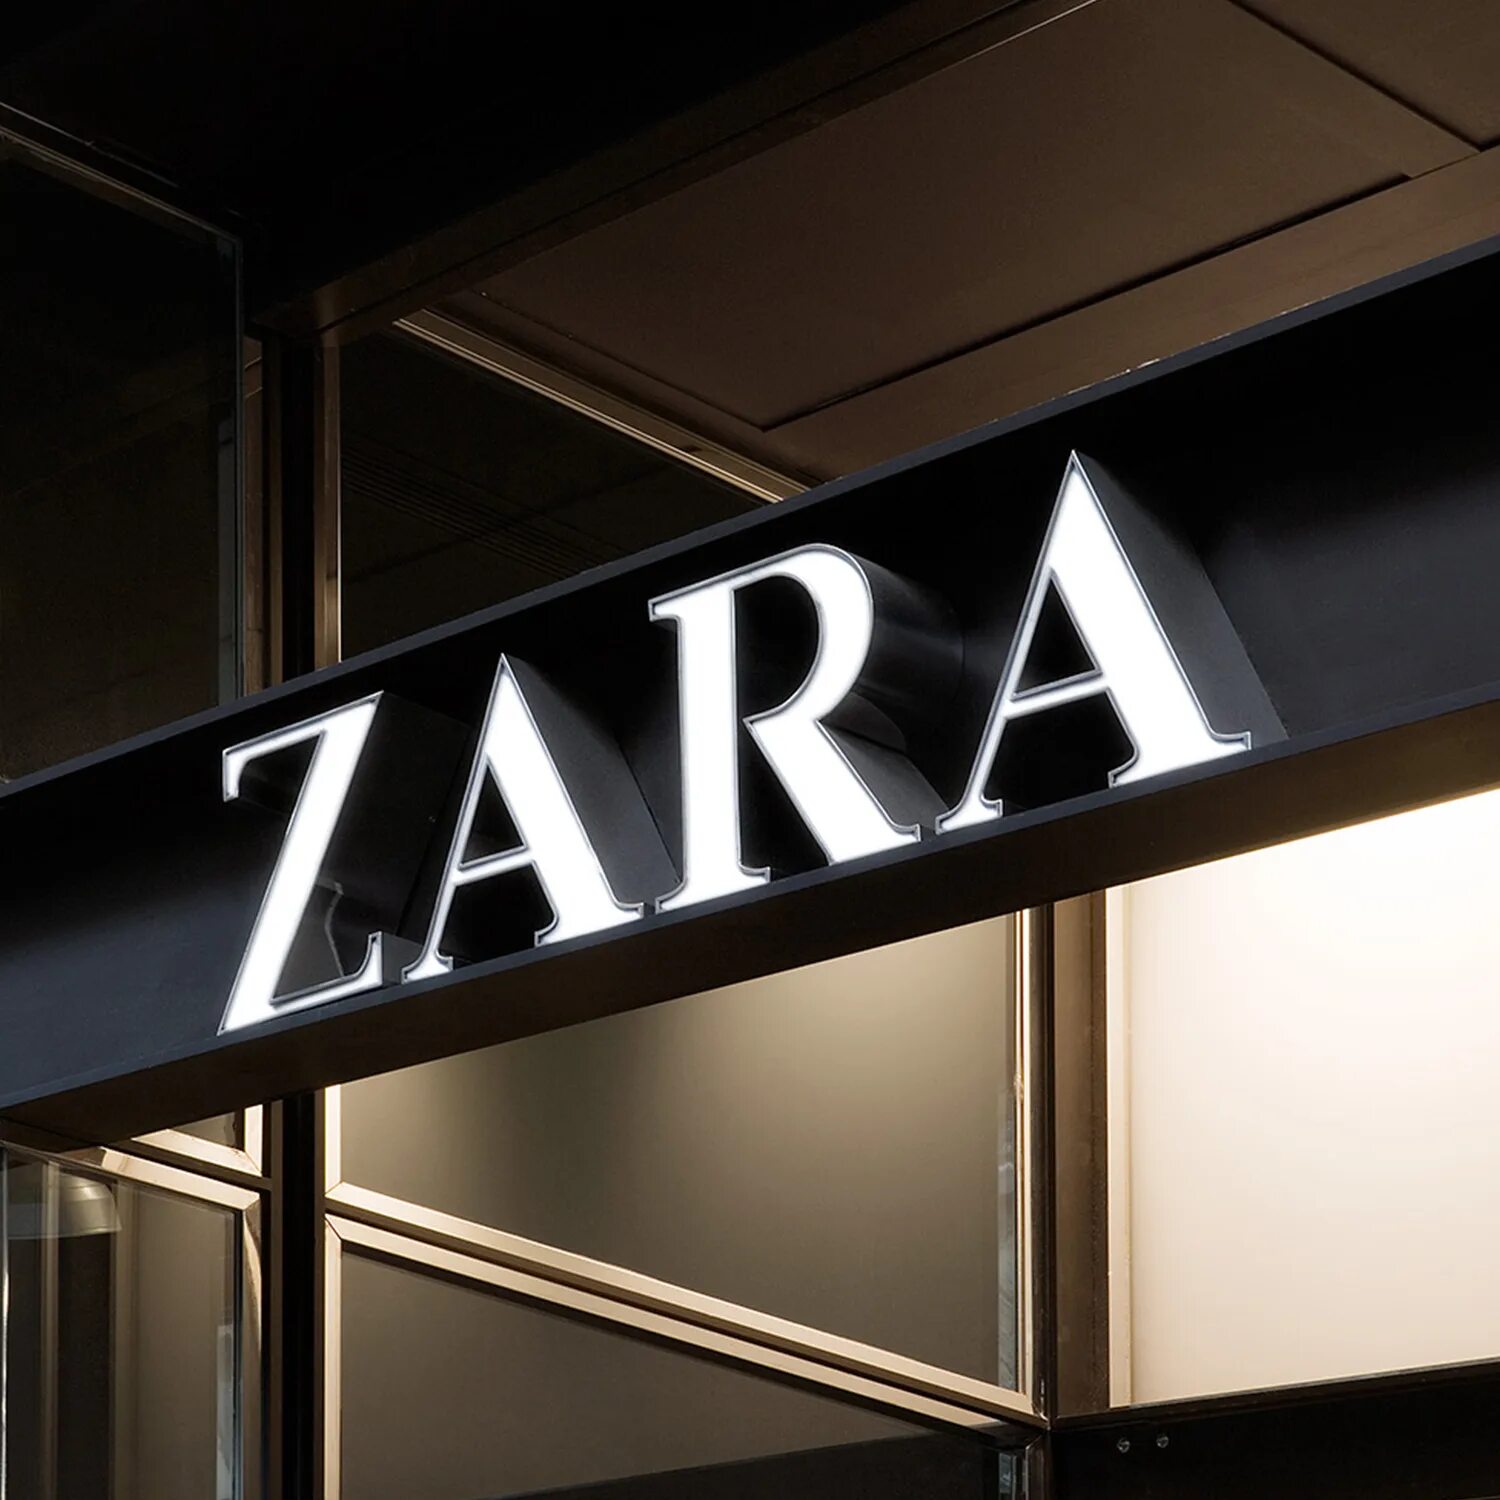 Zara express. Zara бренд. Zara логотип.